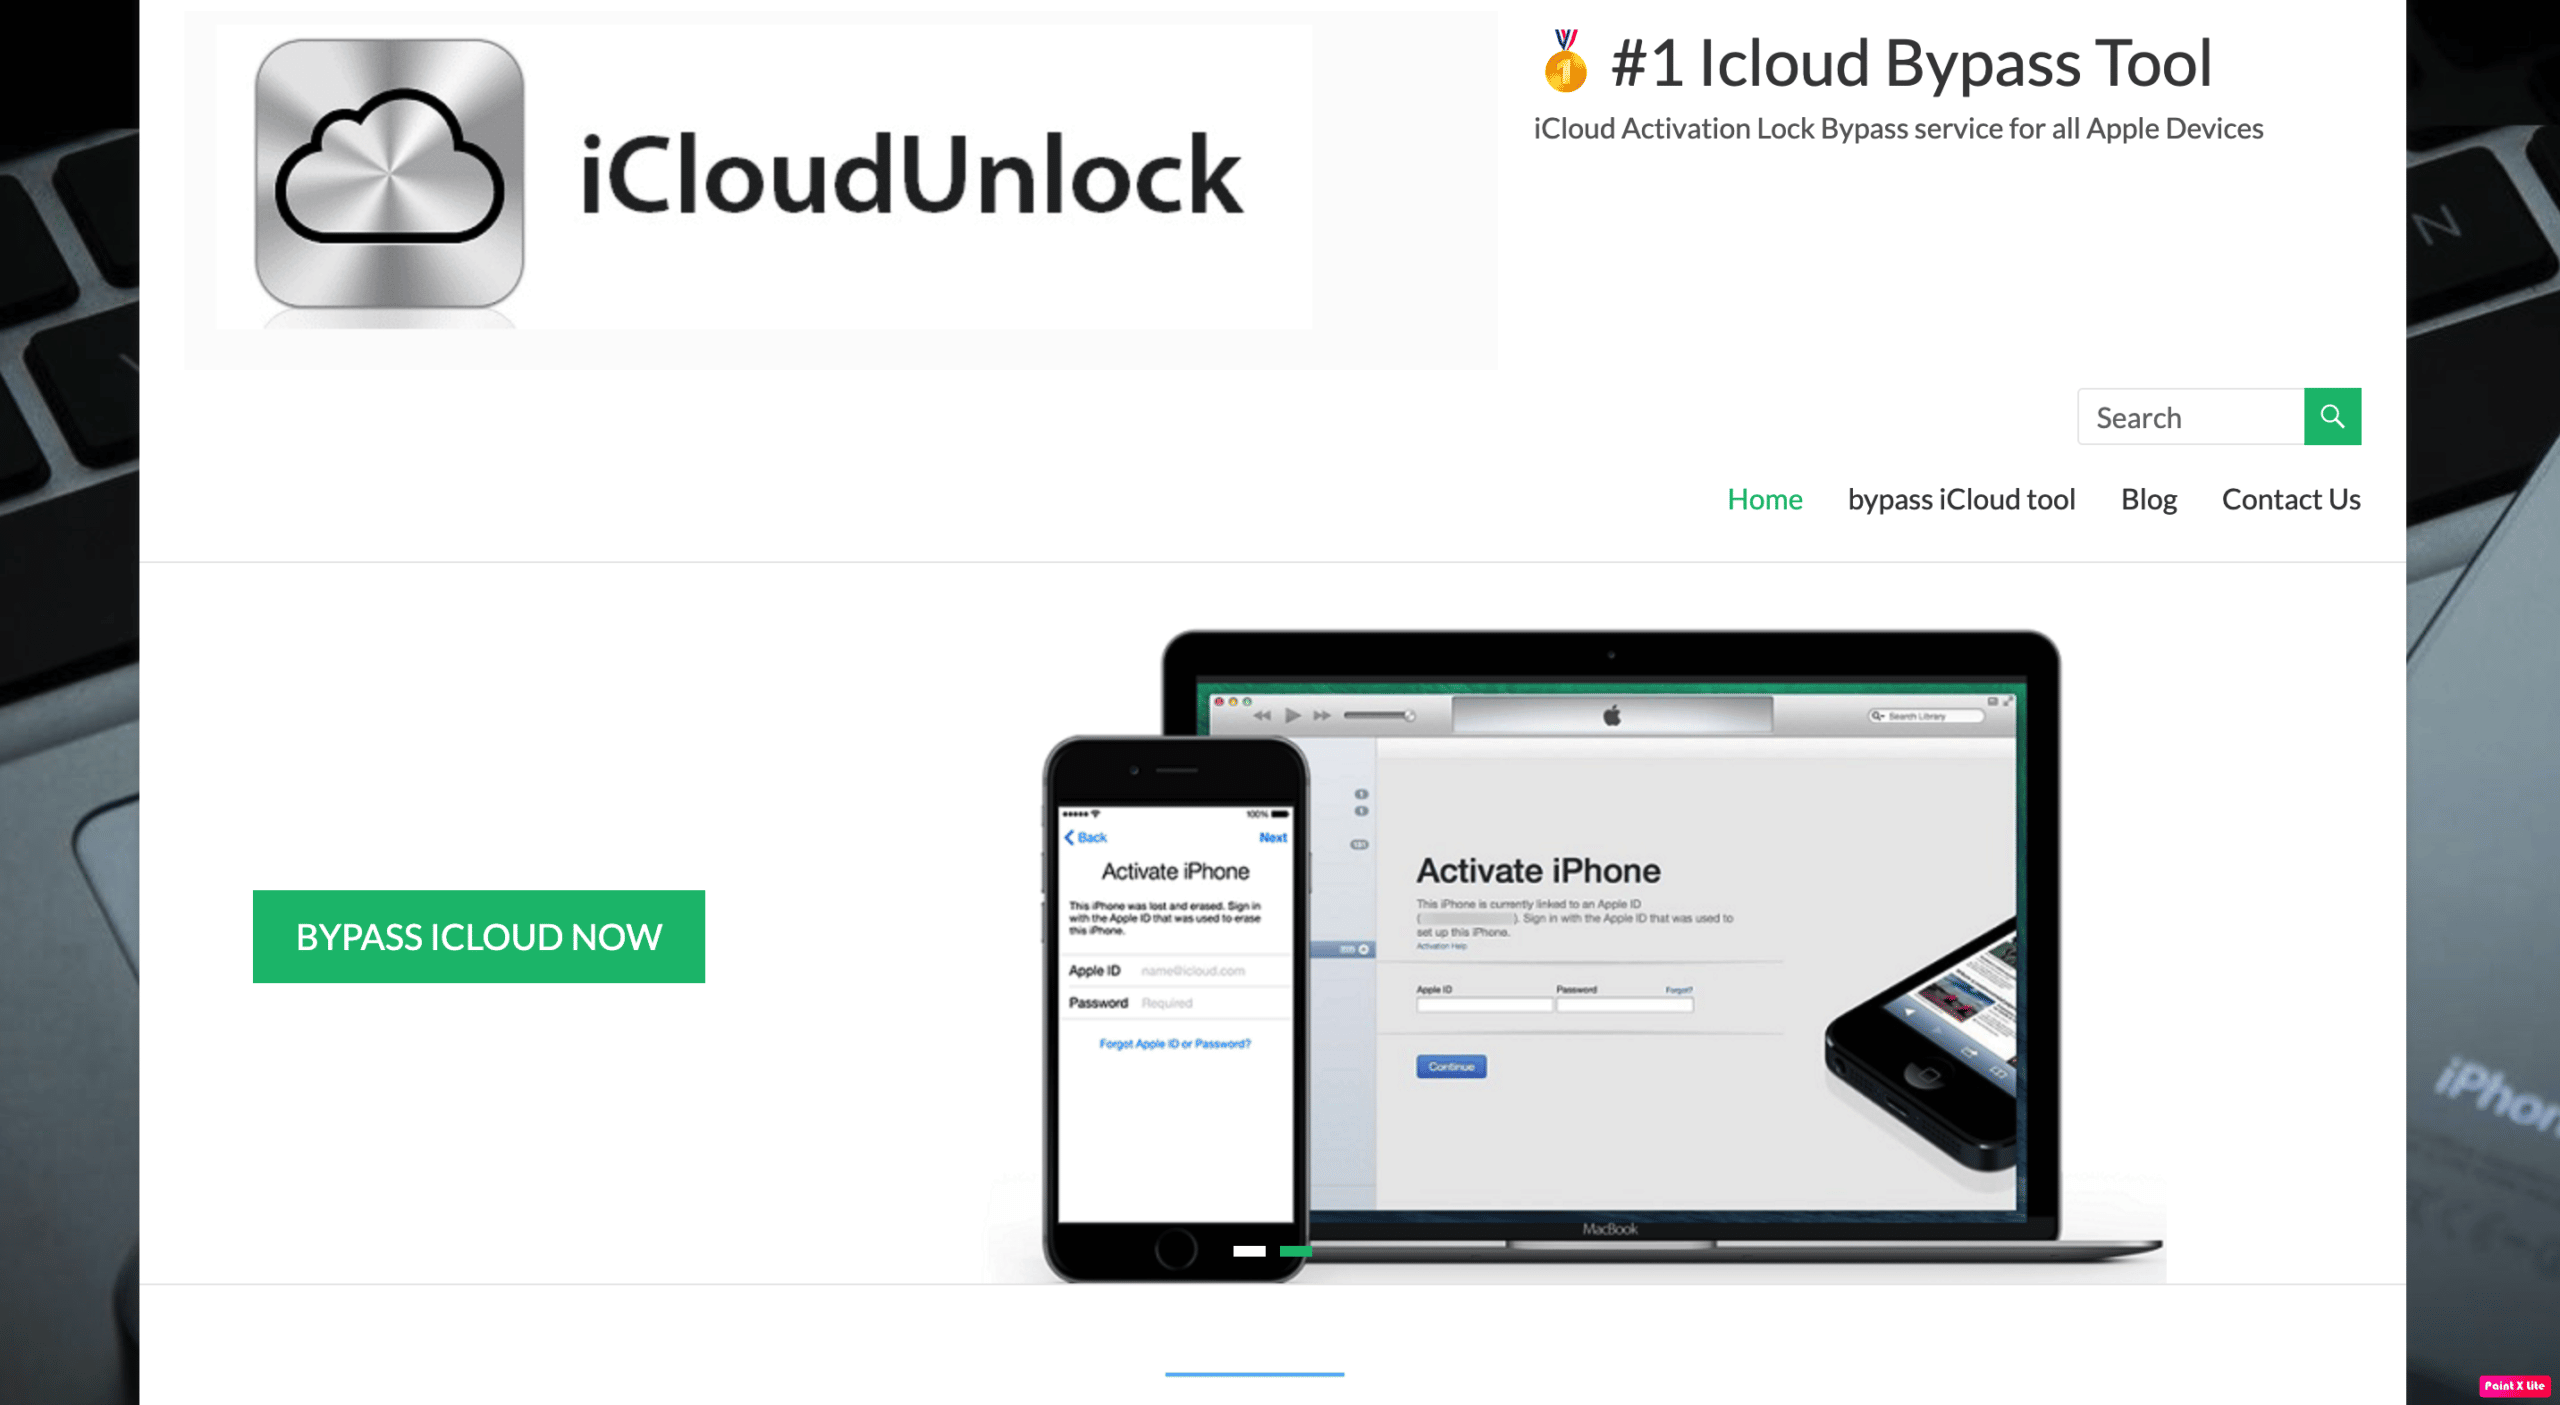 domača stran za odklepanje icloud. Top 15 najboljših orodij za obhod iCloud Unlock